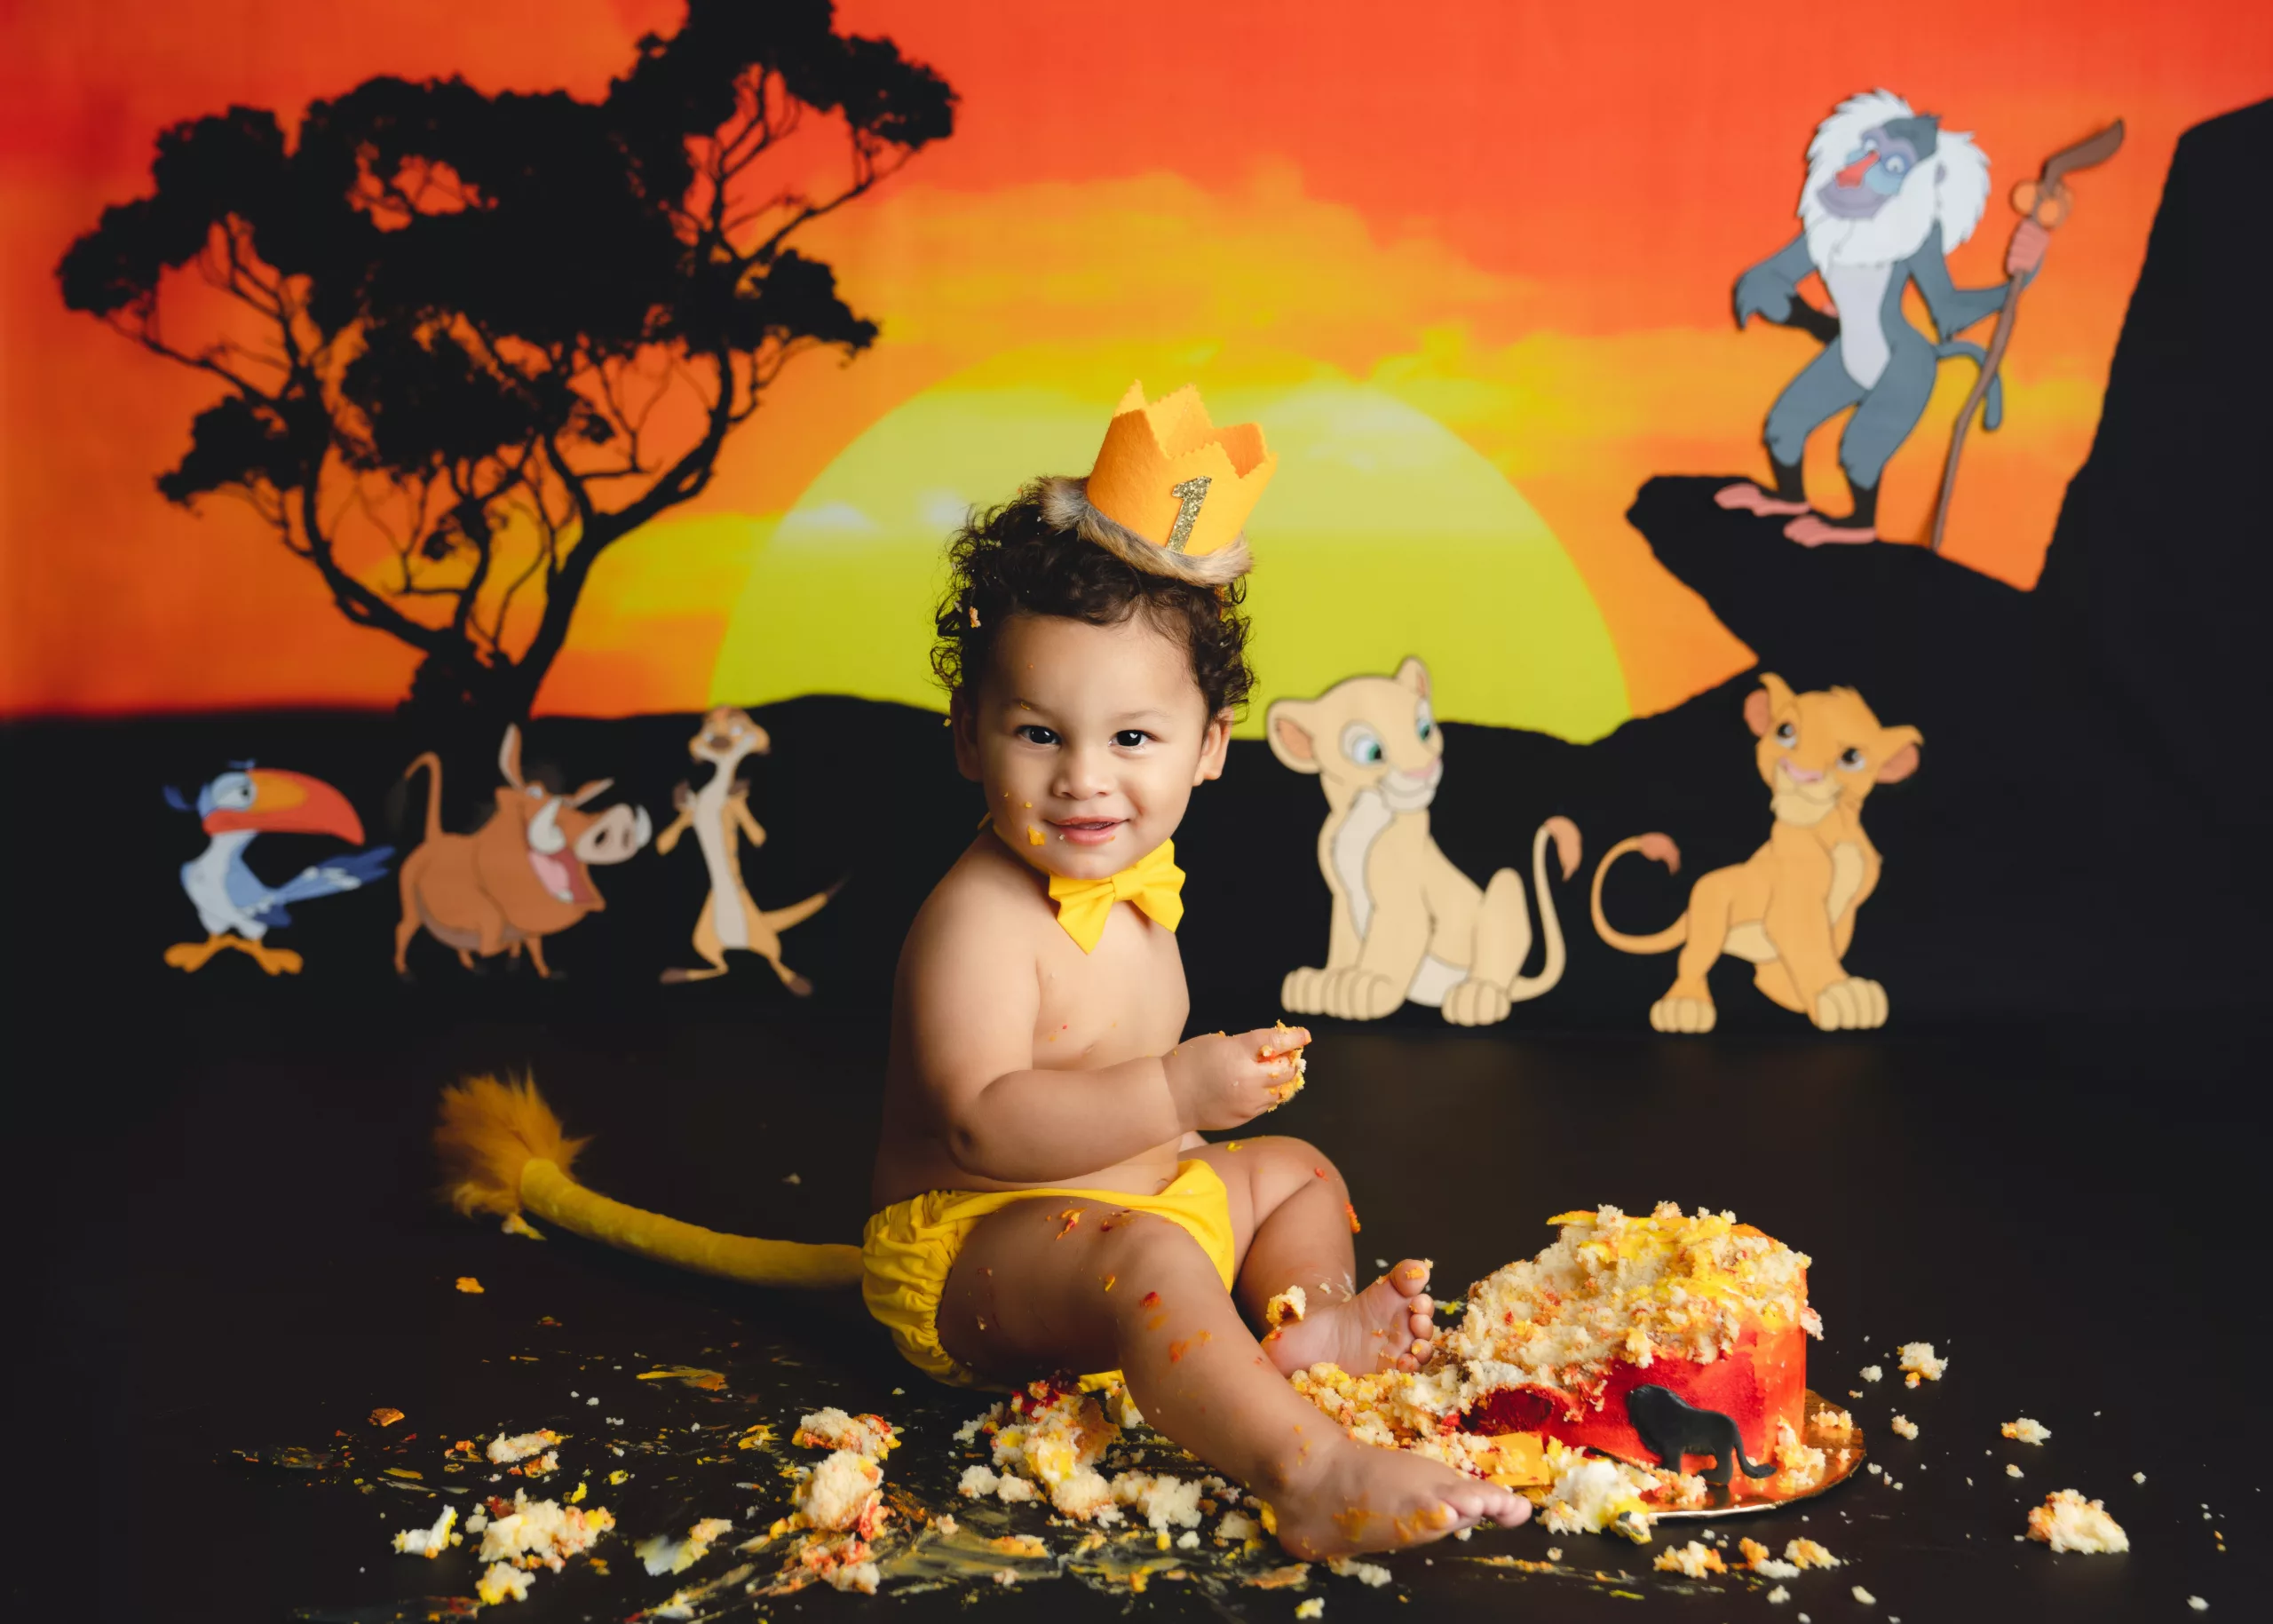 Orlando Boy Cake Smash 1st Birthday Photographer Photo Studio disney the lion king simba nala timon pumba and rafiki